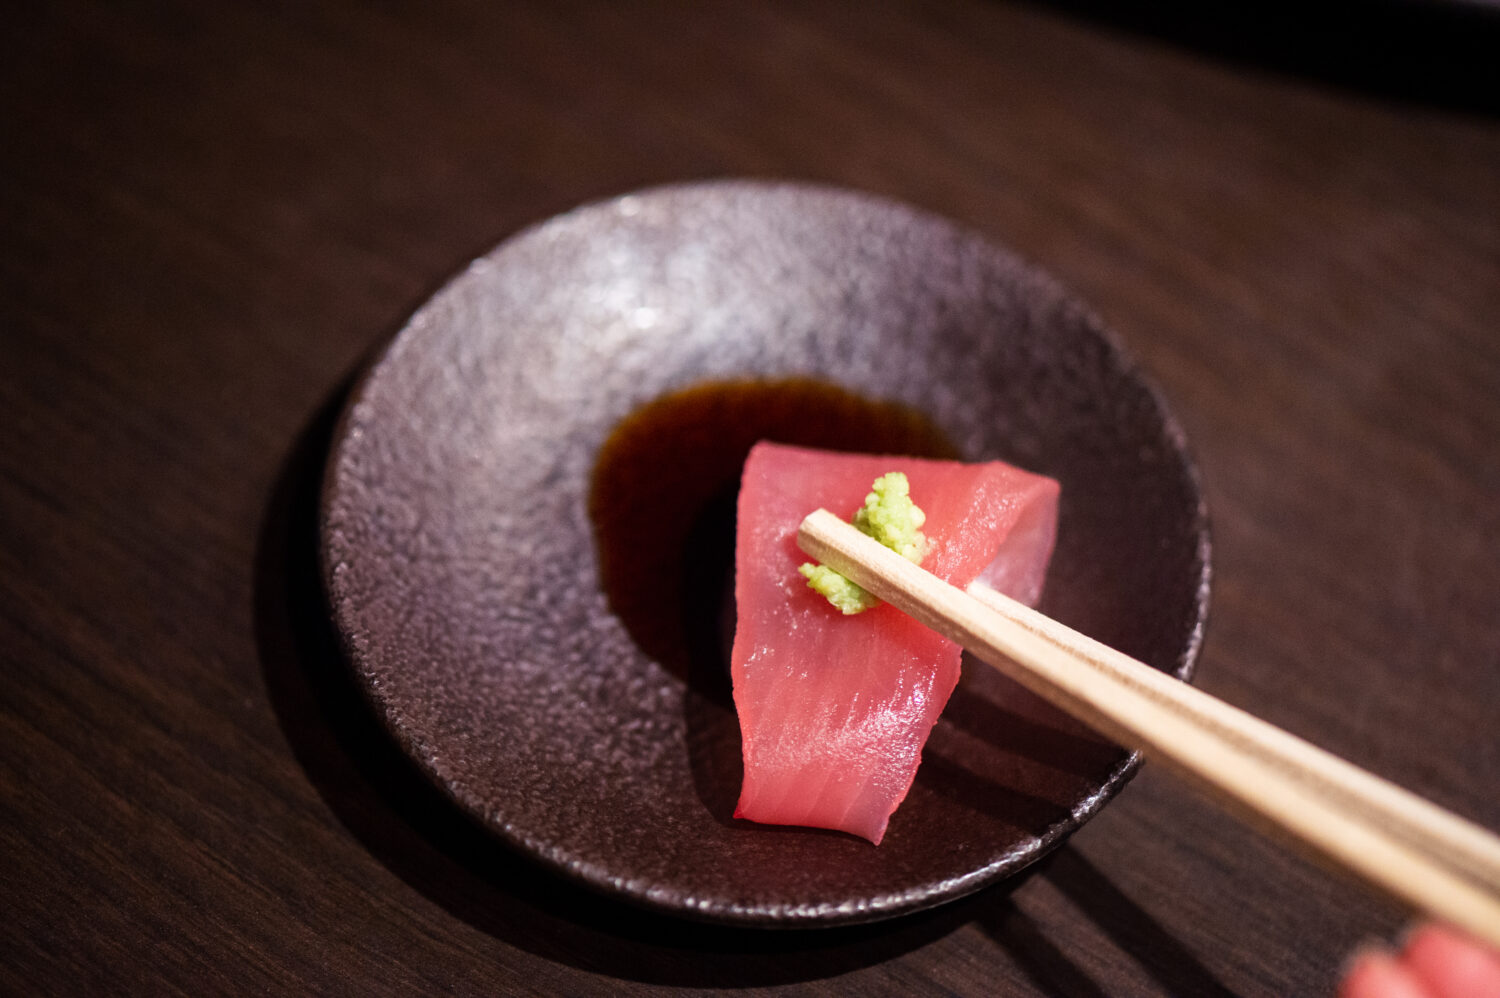 Sashimi　刺身　sashimi